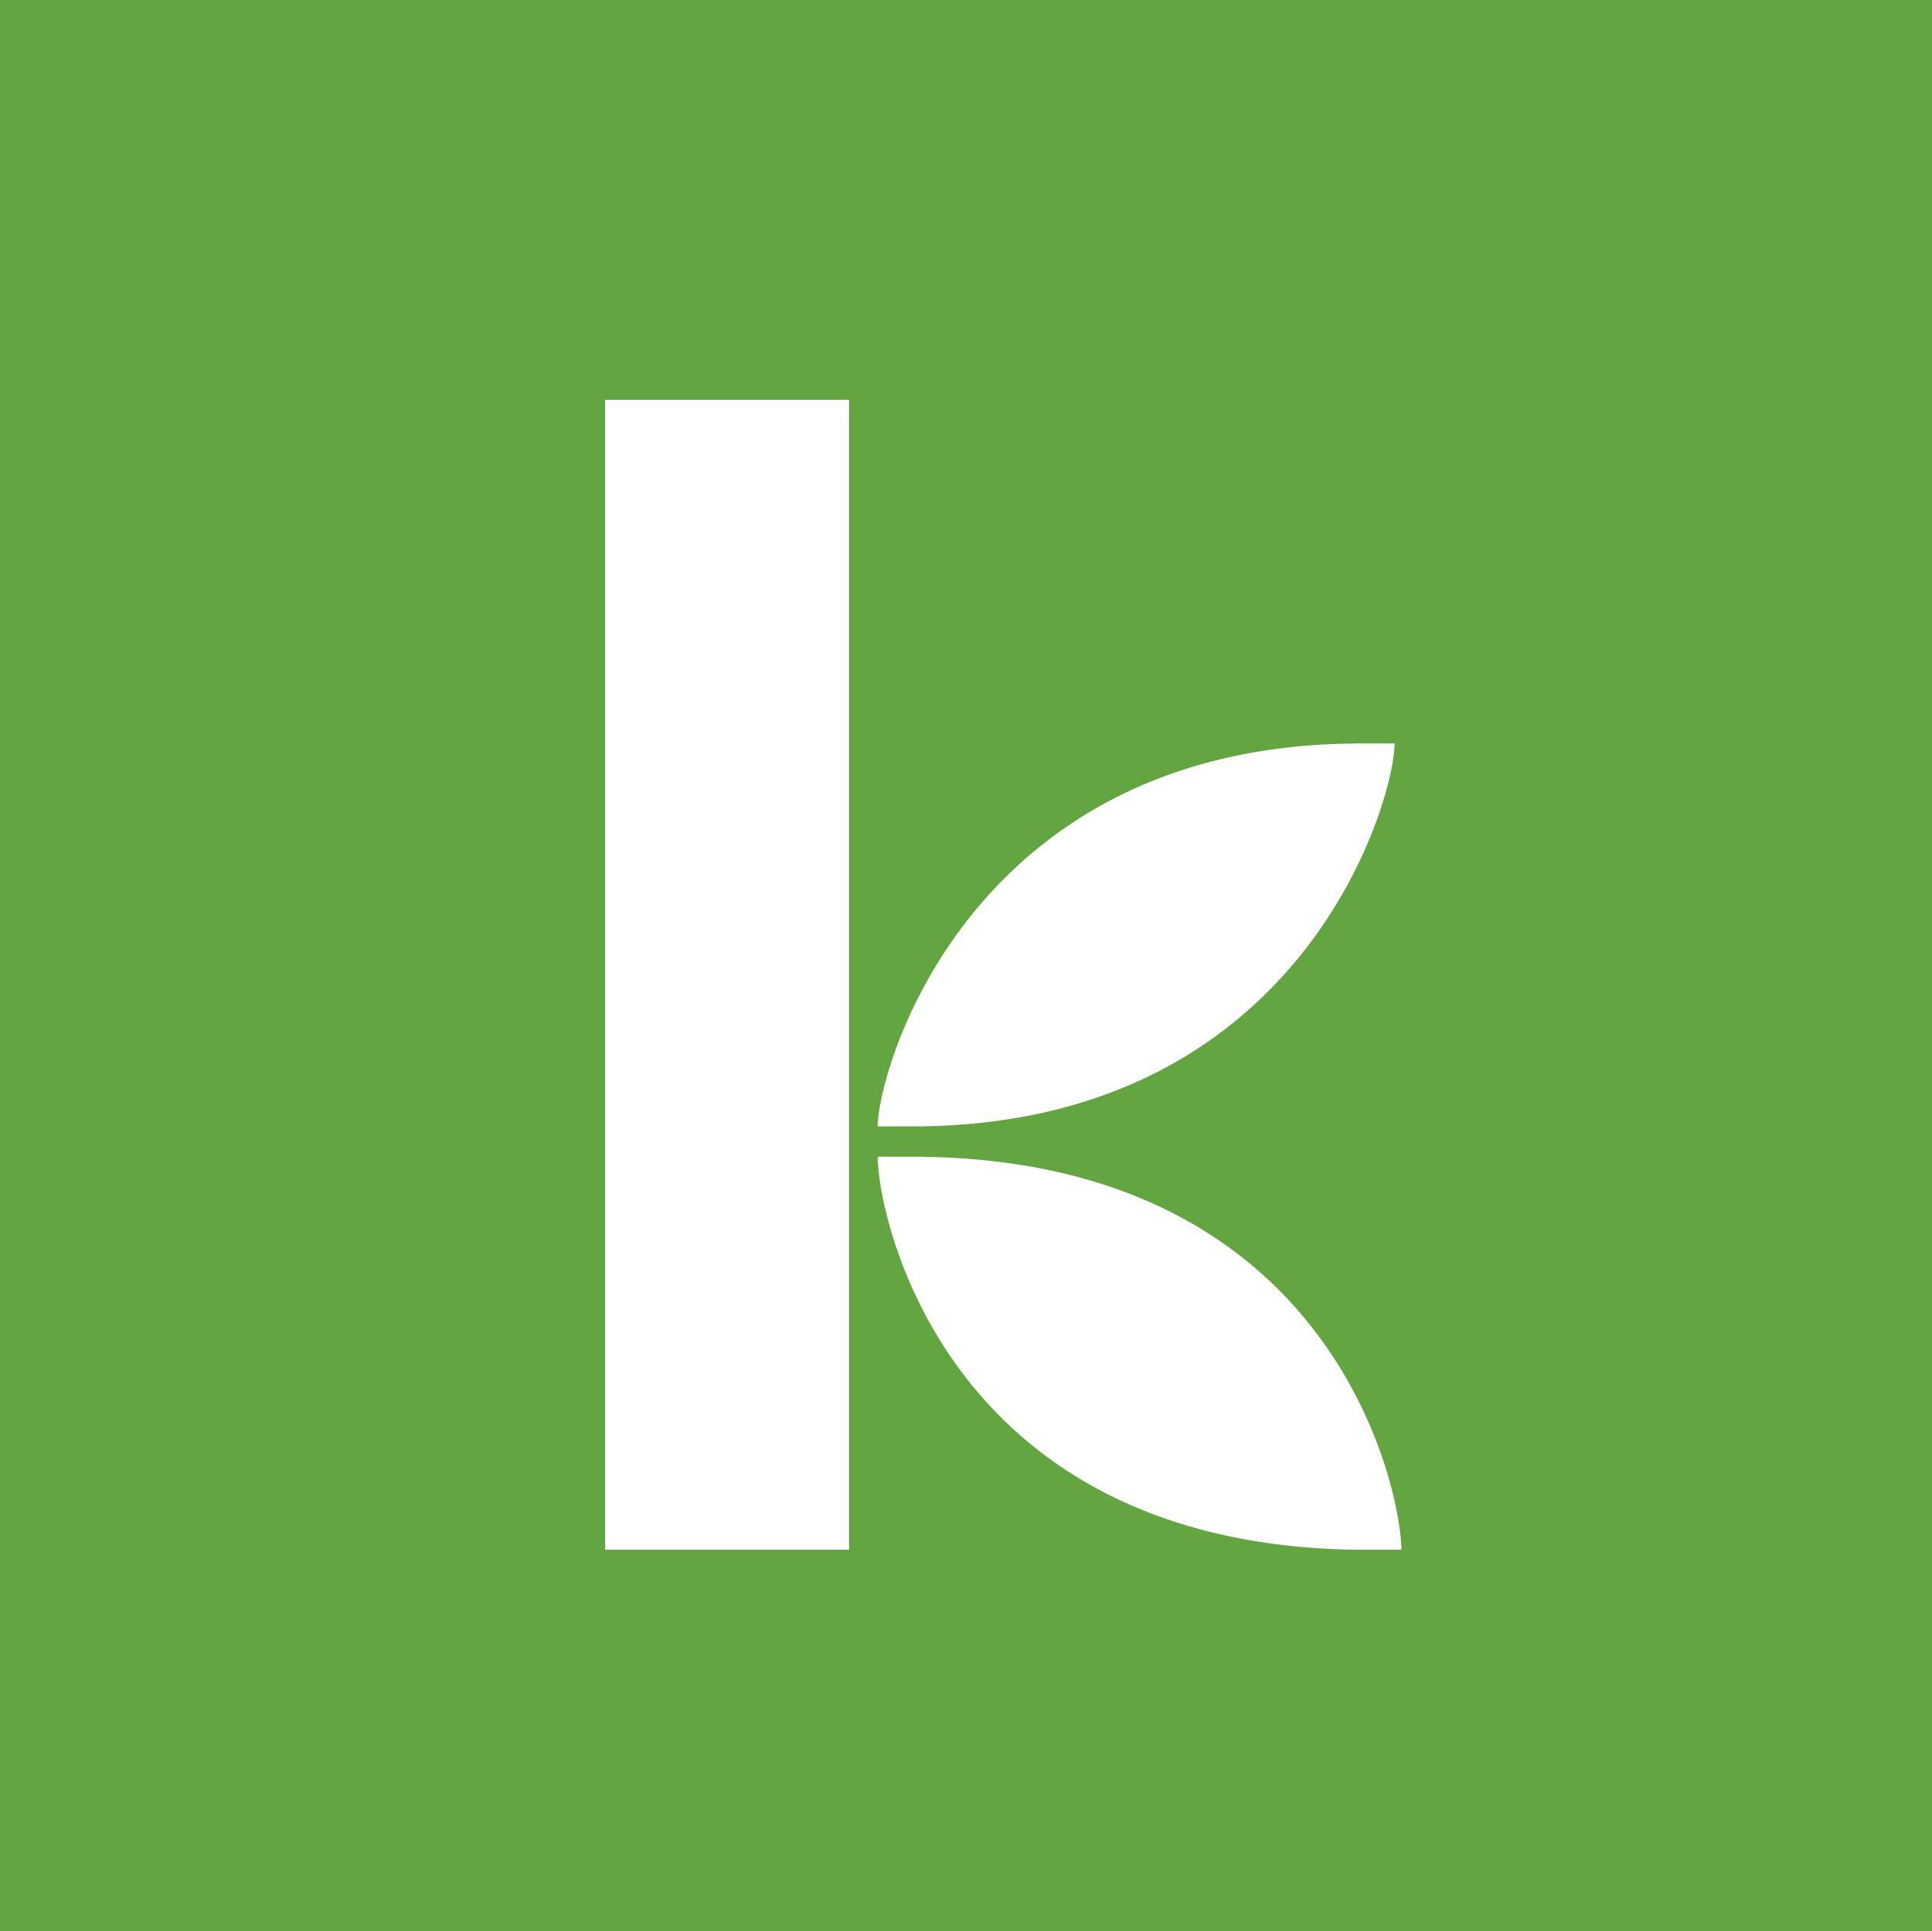 Green K Logo - Where Kiva works | Kiva